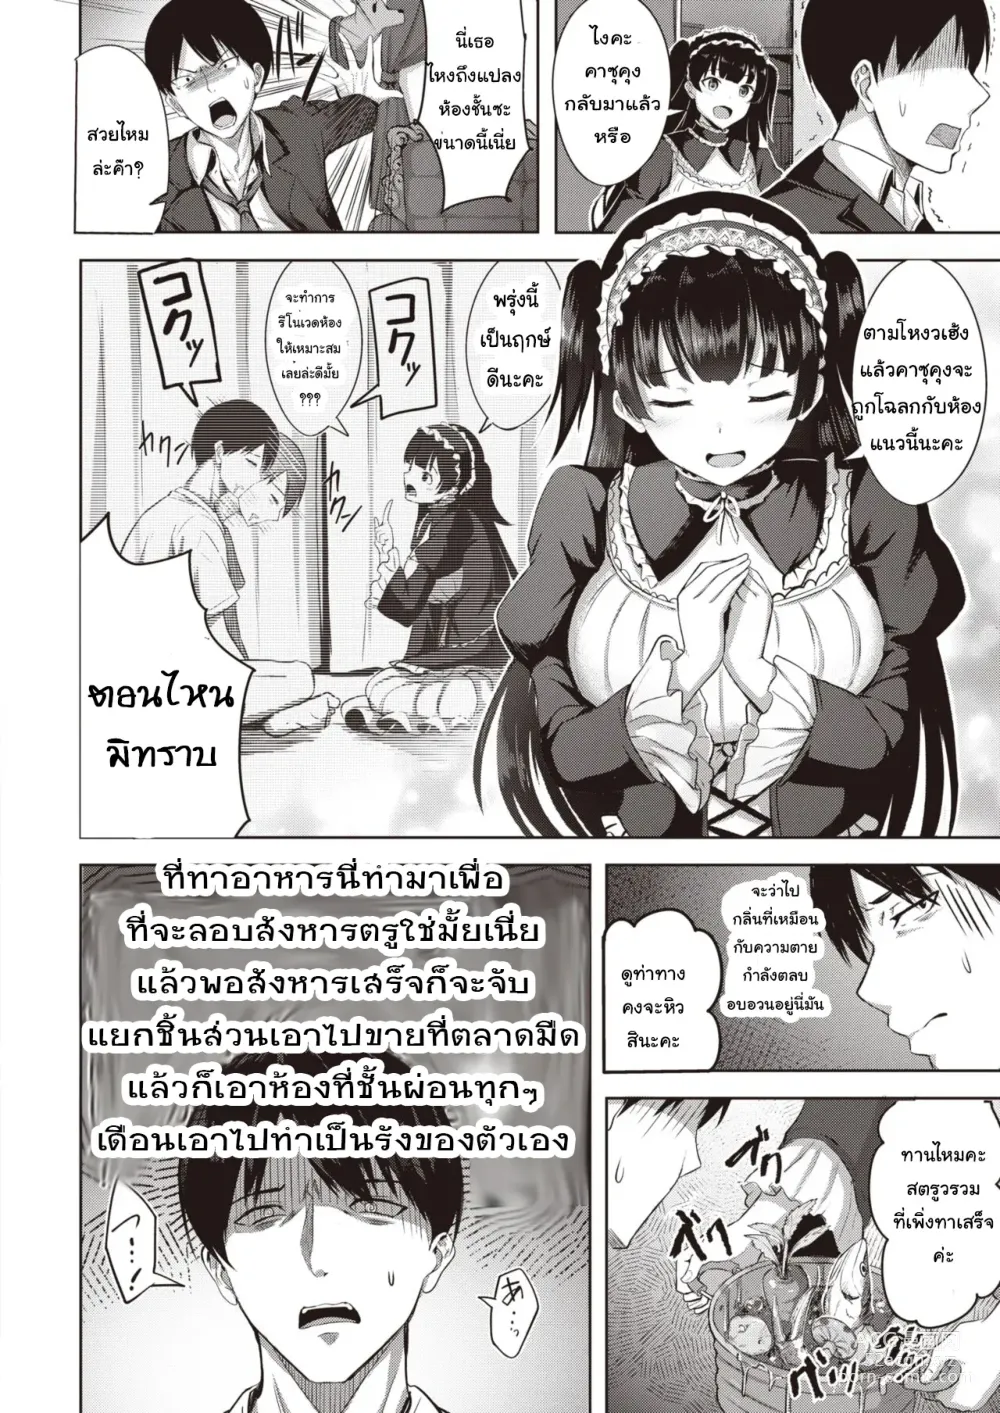 Page 6 of manga เทพธิดาโกธิค นำโชค